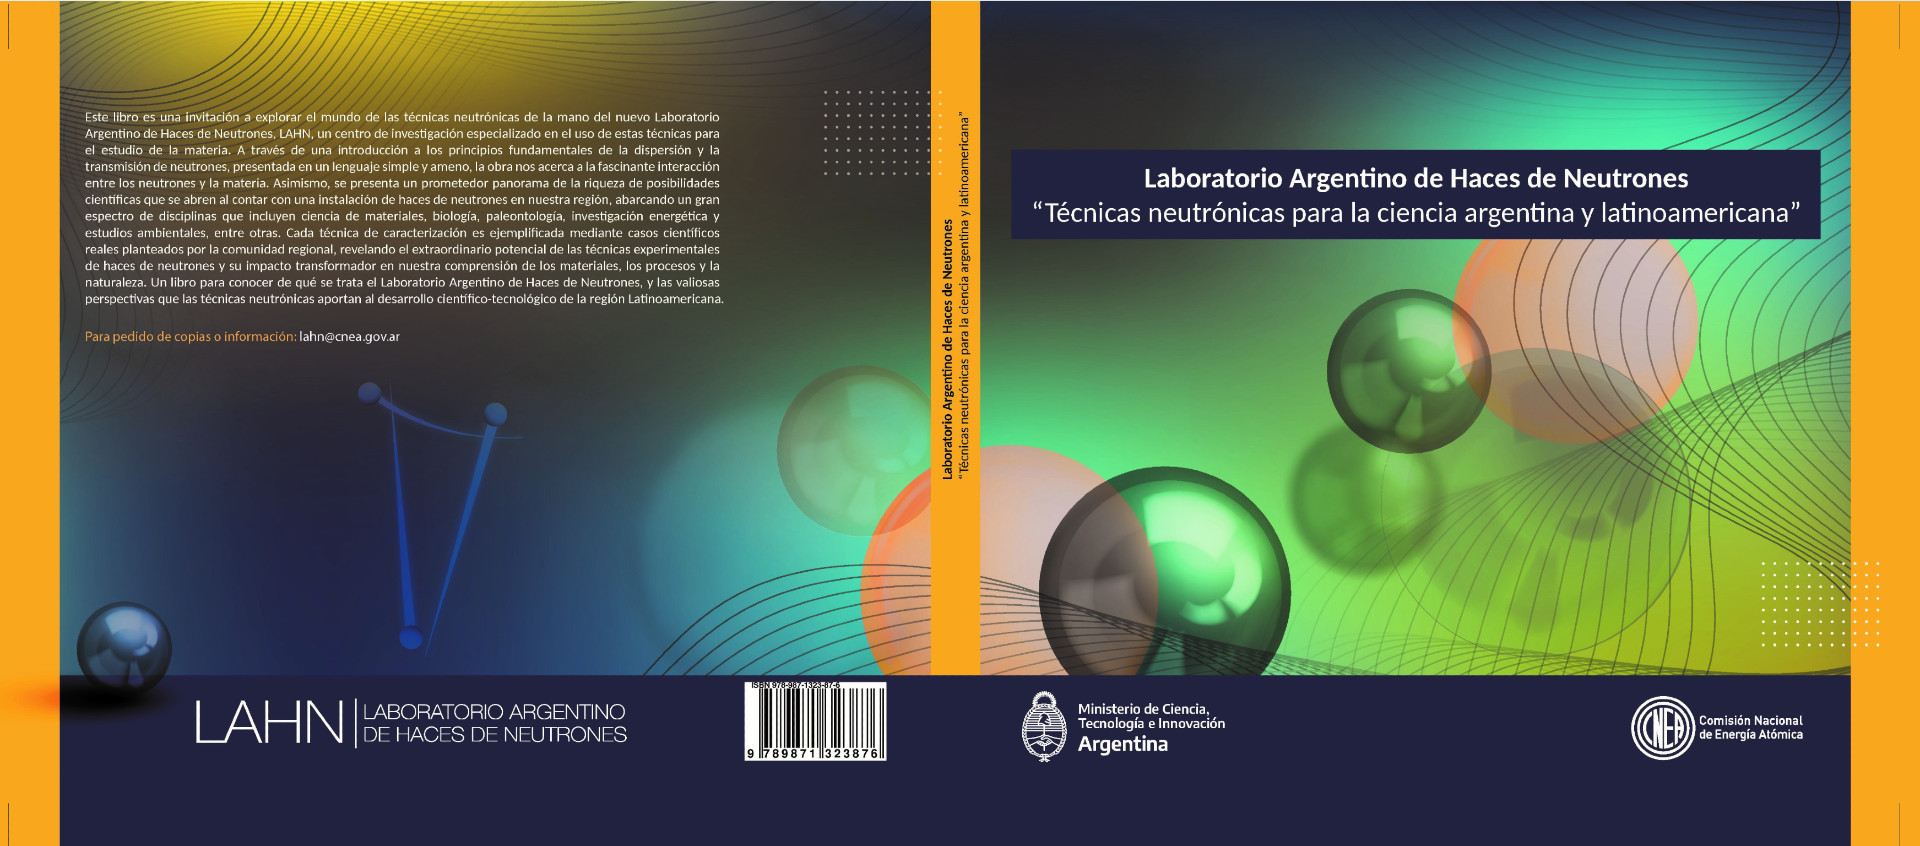 Tapa del libro "Casos científicos del Laboratorio Argentino de Haces de Neutrones"